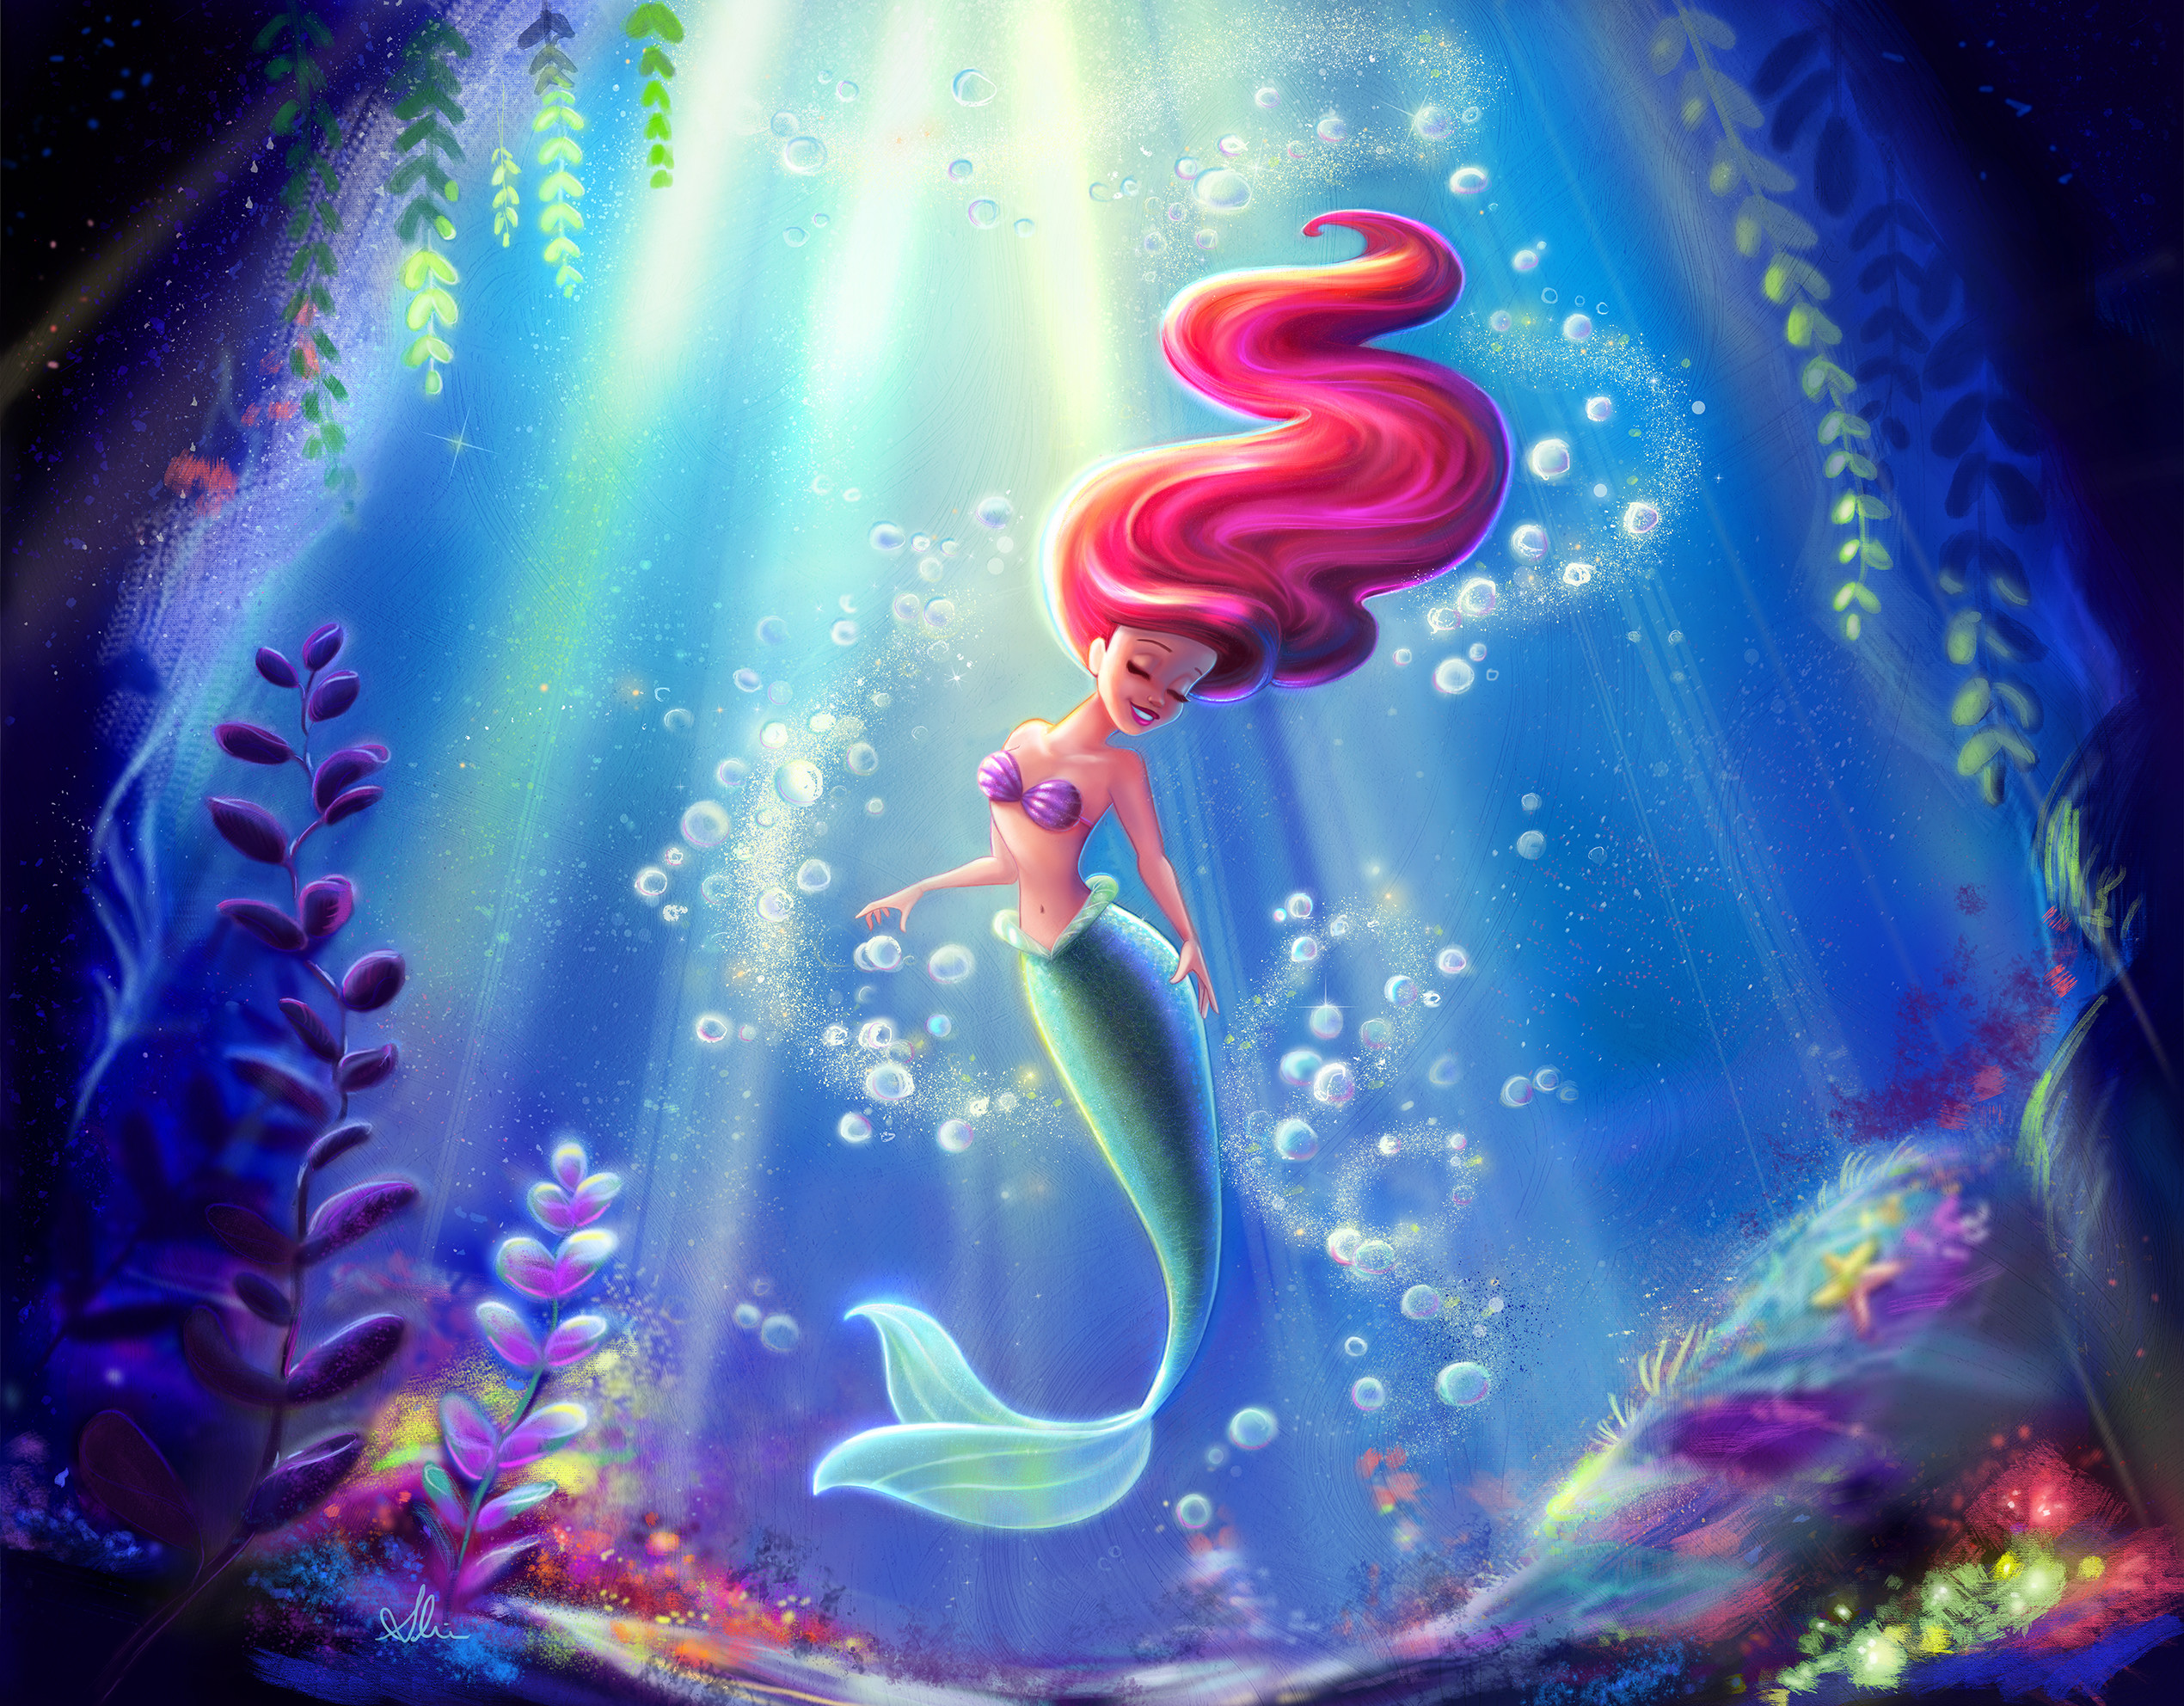 Ariel The Little Merma - Little Mermaid Wallpaper Ariel - HD Wallpaper 